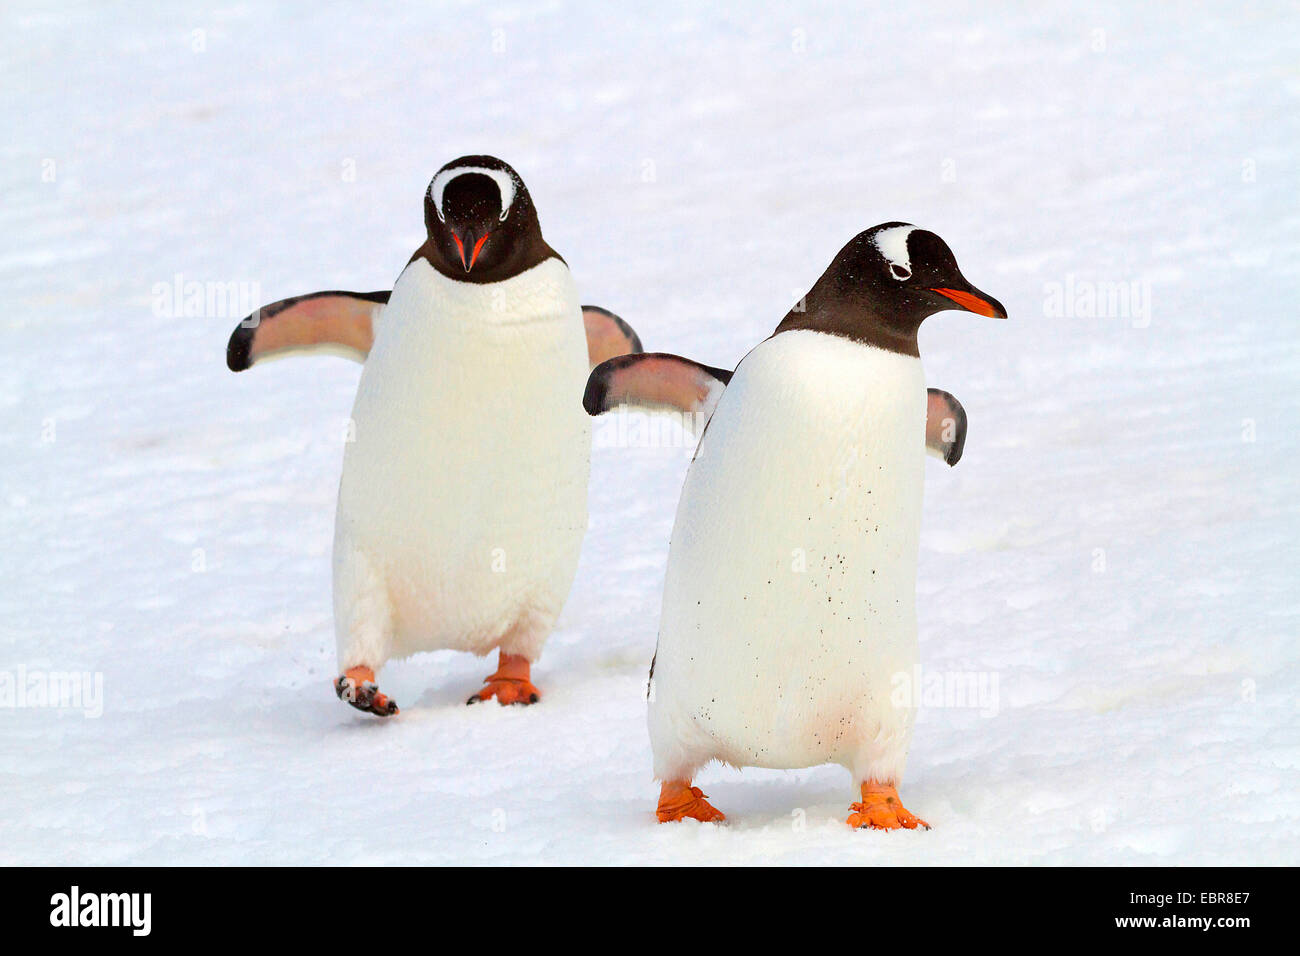 Pingüinos papúa (Pygoscelis papua), dos pingüinos caminando en la nieve, en la Antártida, las Islas Malvinas Foto de stock